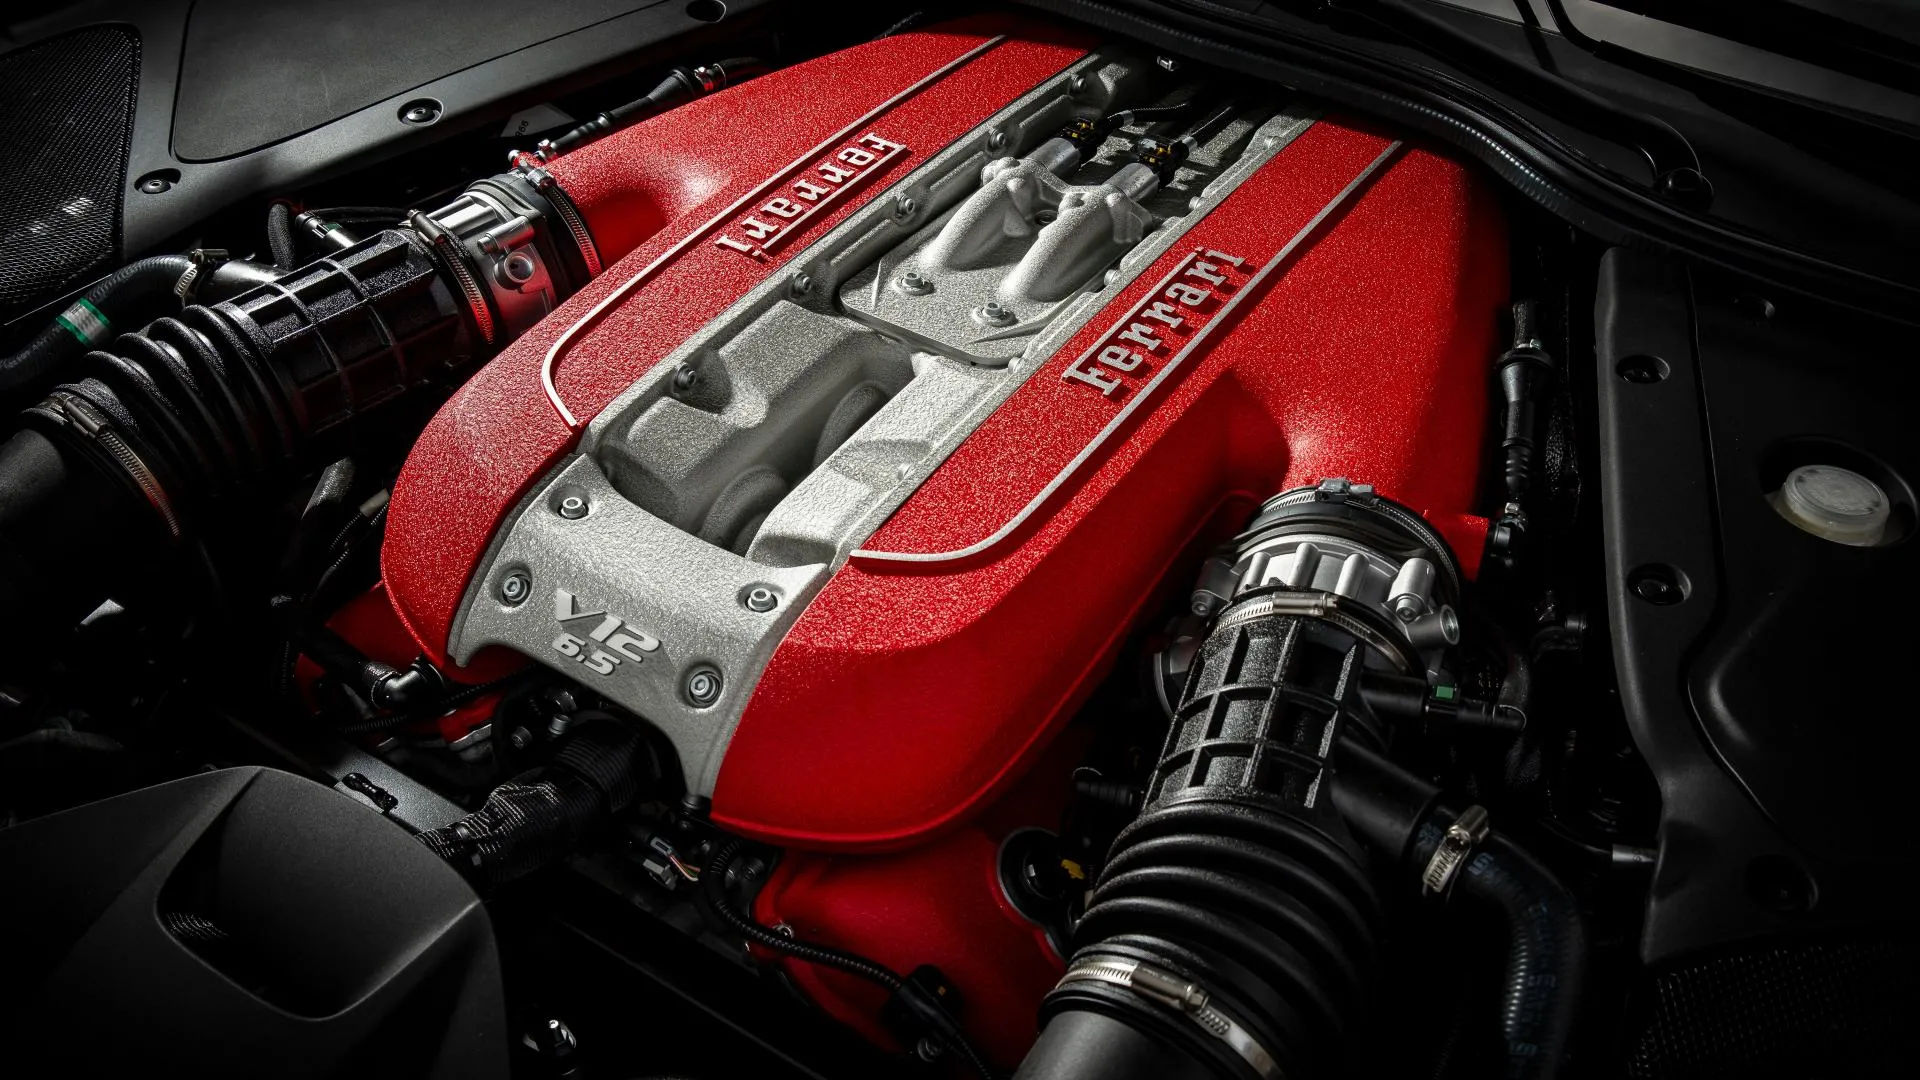 Motores V12 con turbo, un nuevo modelo en noviembre, el Purosangue… ¿Qué nos depara Ferrari?